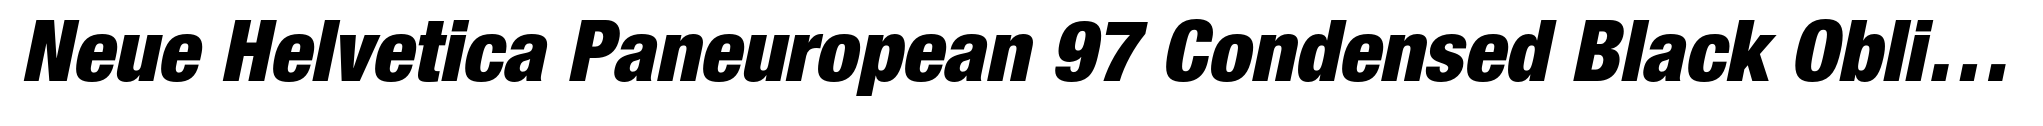 Neue Helvetica Paneuropean 97 Condensed Black Oblique image